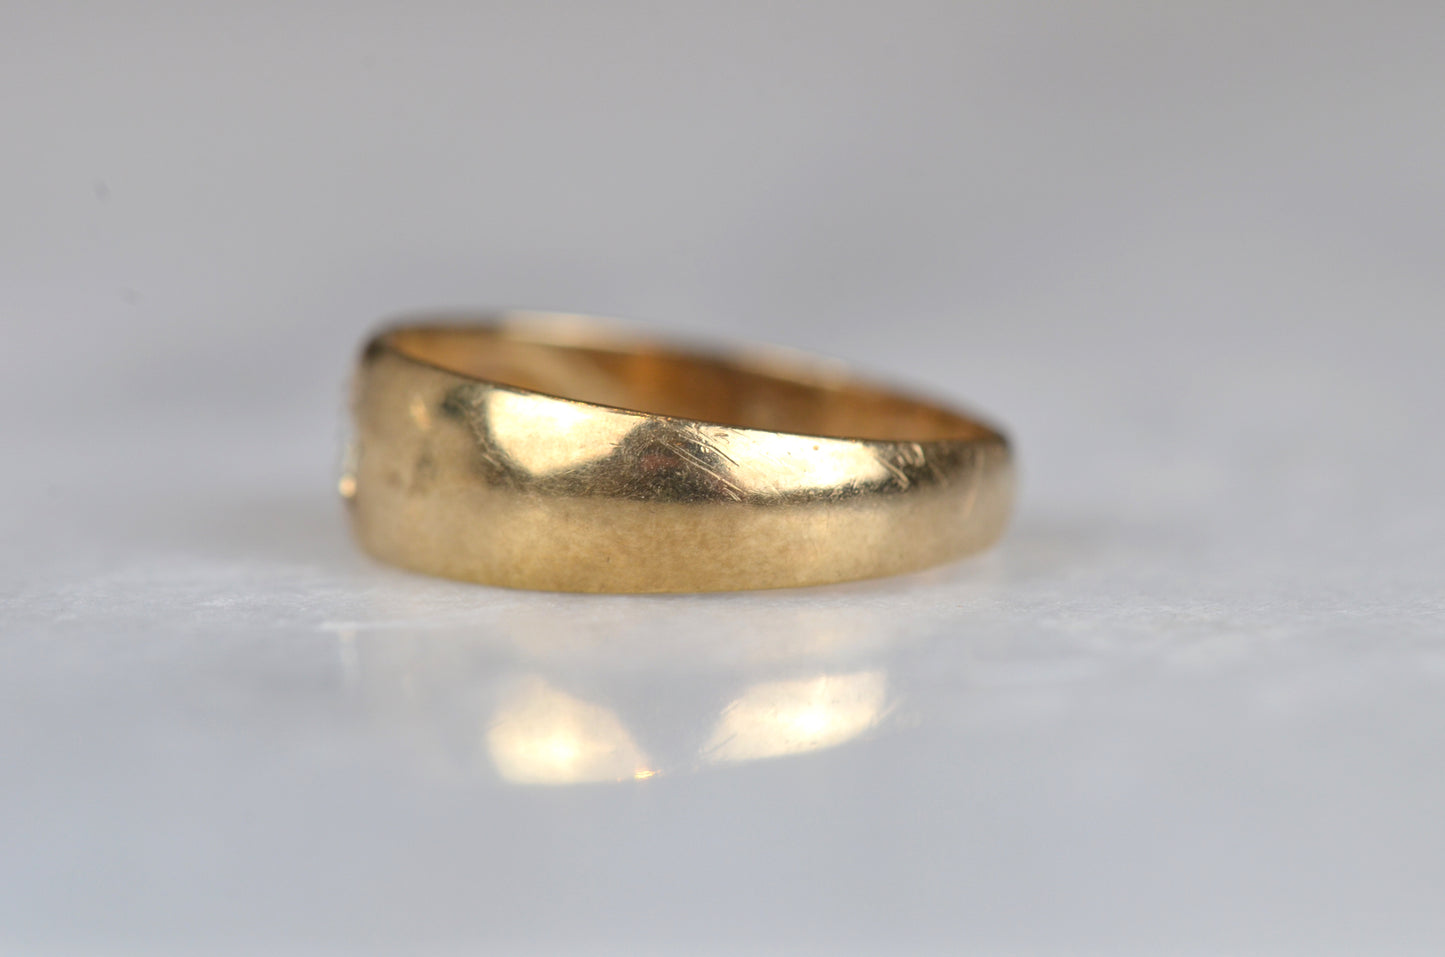 Antique-Inspired Illusion Starburst Ring